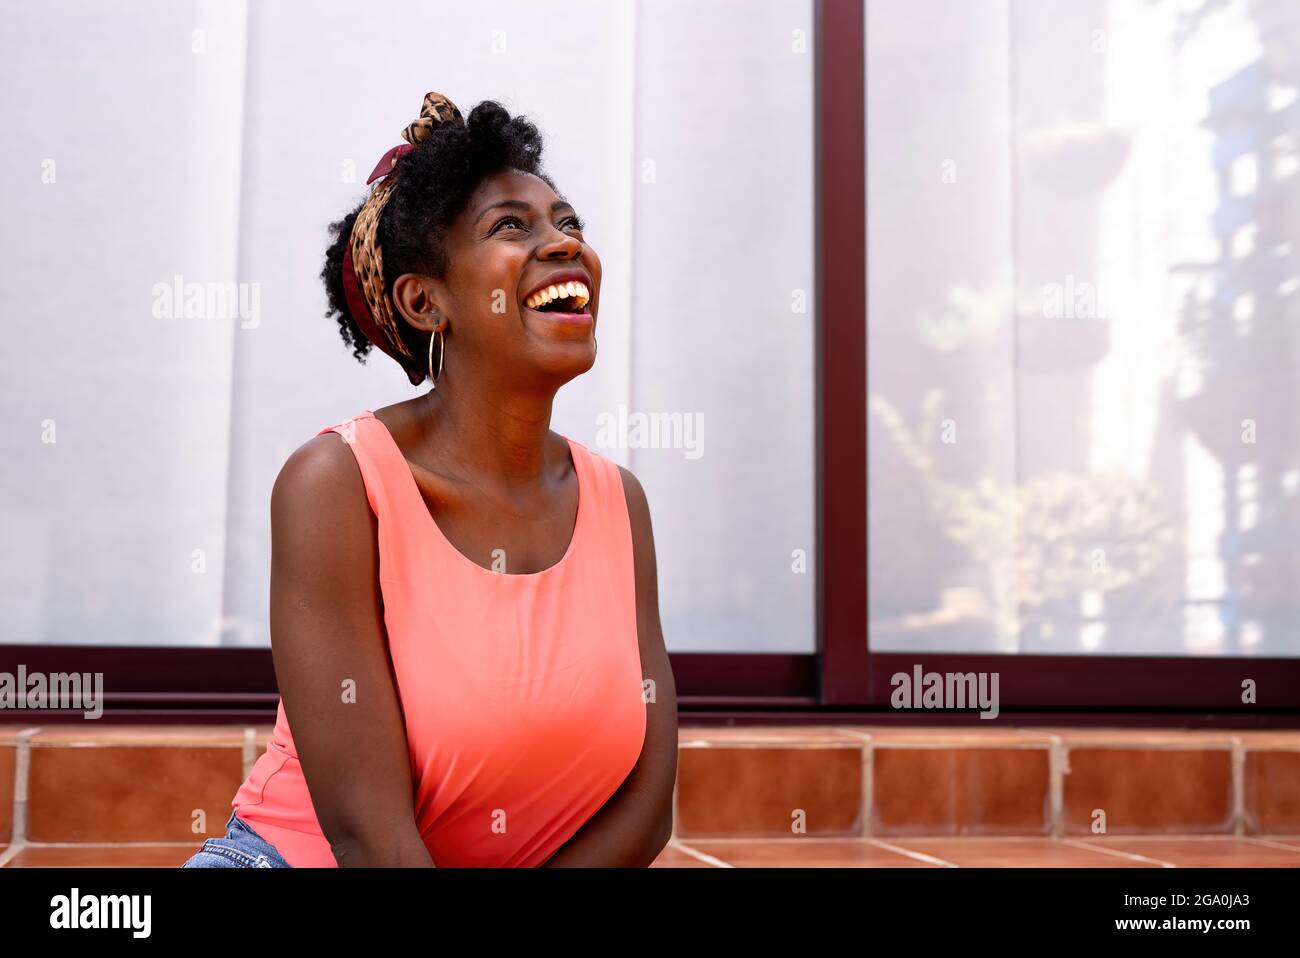 Jeune femme afro-américaine joyeuse en haut rose décontracté et serre-tête riant joyeusement tout en s'amusant près d'un bâtiment moderne avec des murs en verre Banque D'Images